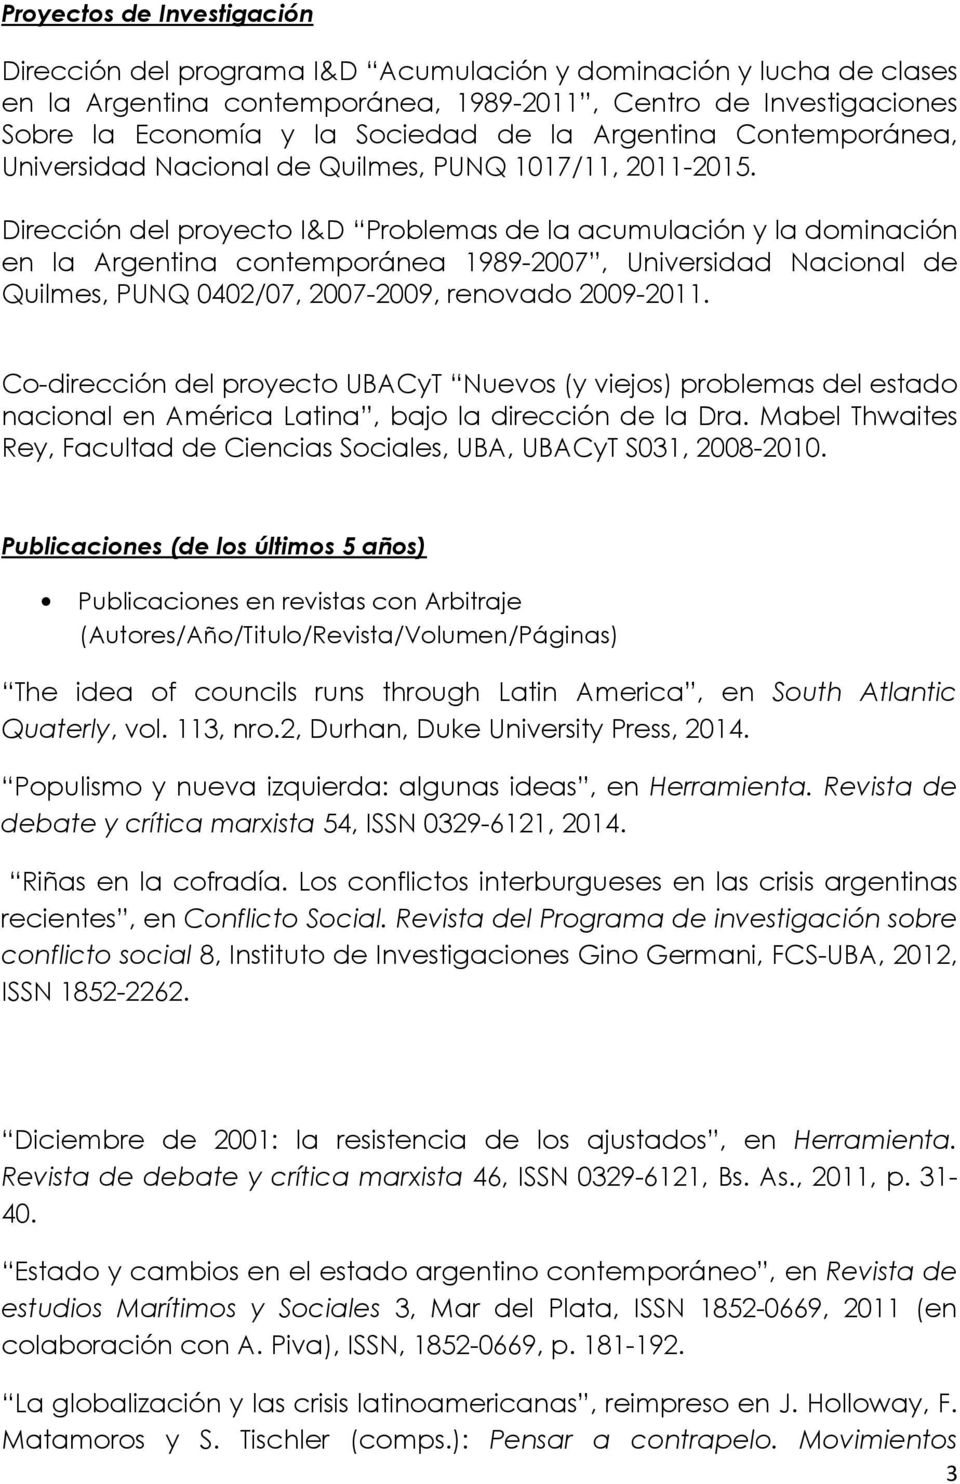 Dirección del proyecto I&D Problemas de la acumulación y la dominación en la Argentina contemporánea 1989-2007, Universidad Nacional de Quilmes, PUNQ 0402/07, 2007-2009, renovado 2009-2011.